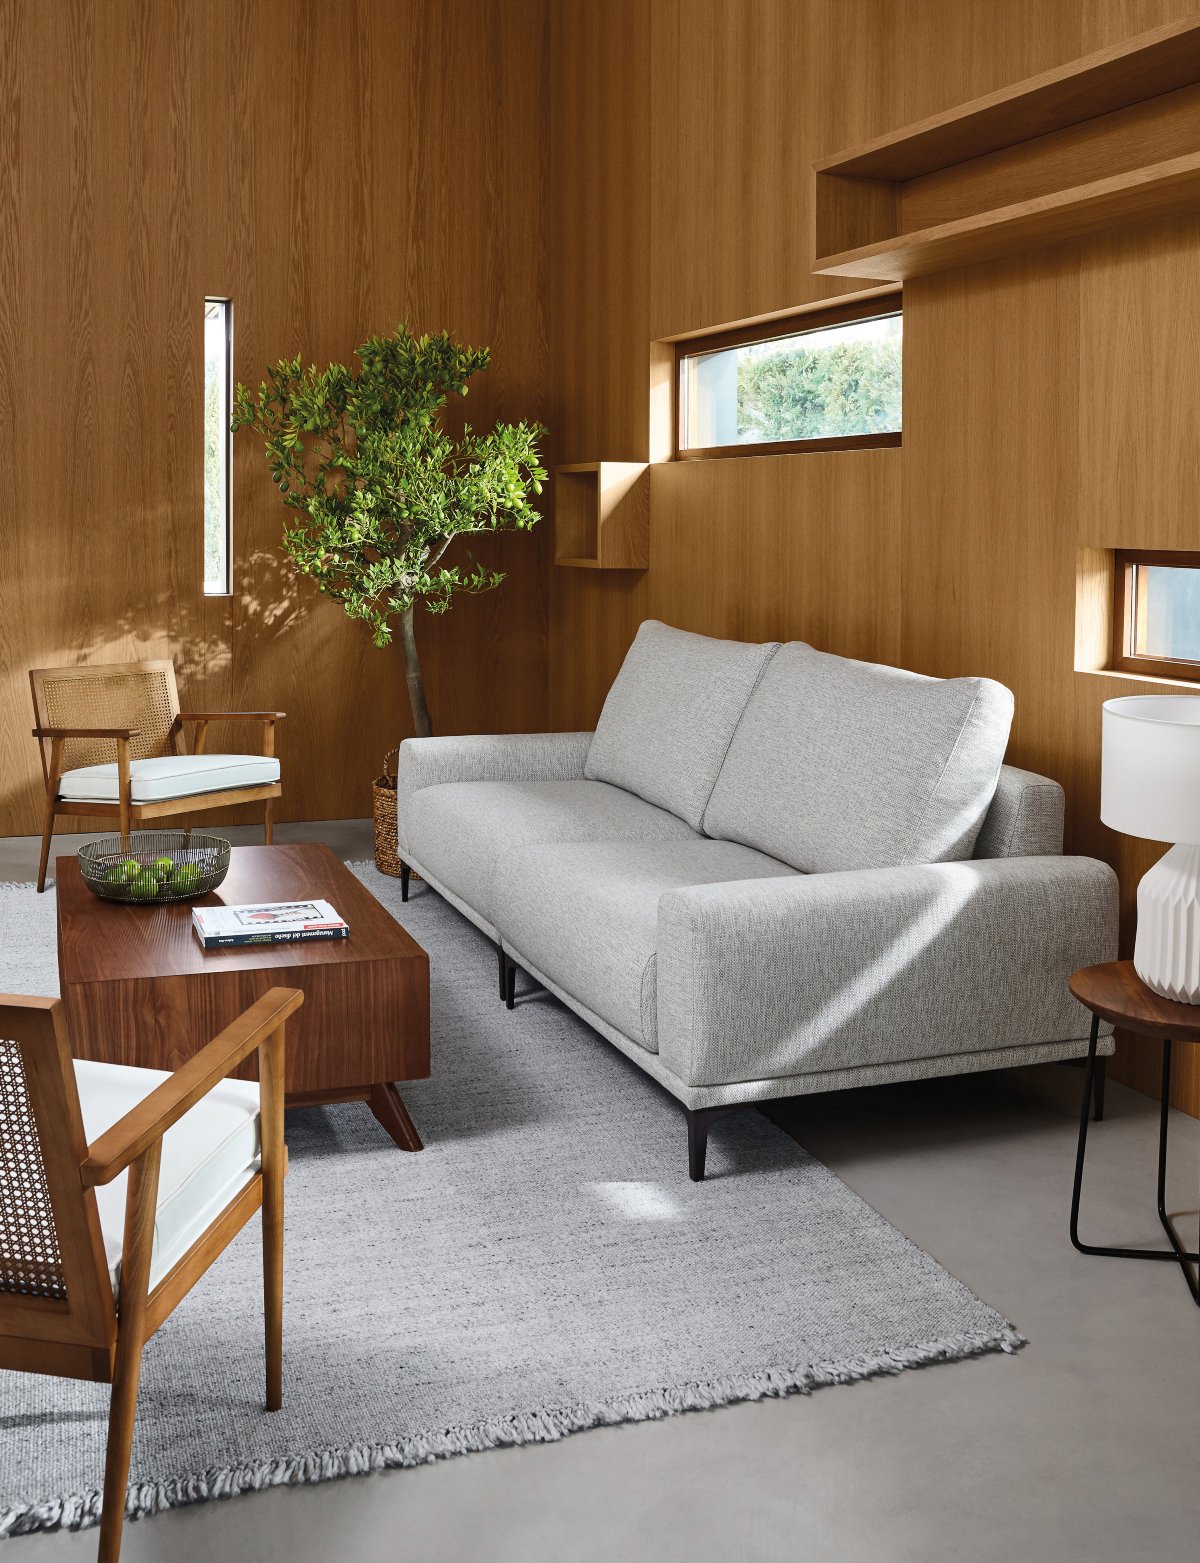 Salón pequeño panelado en madera con sofá gris